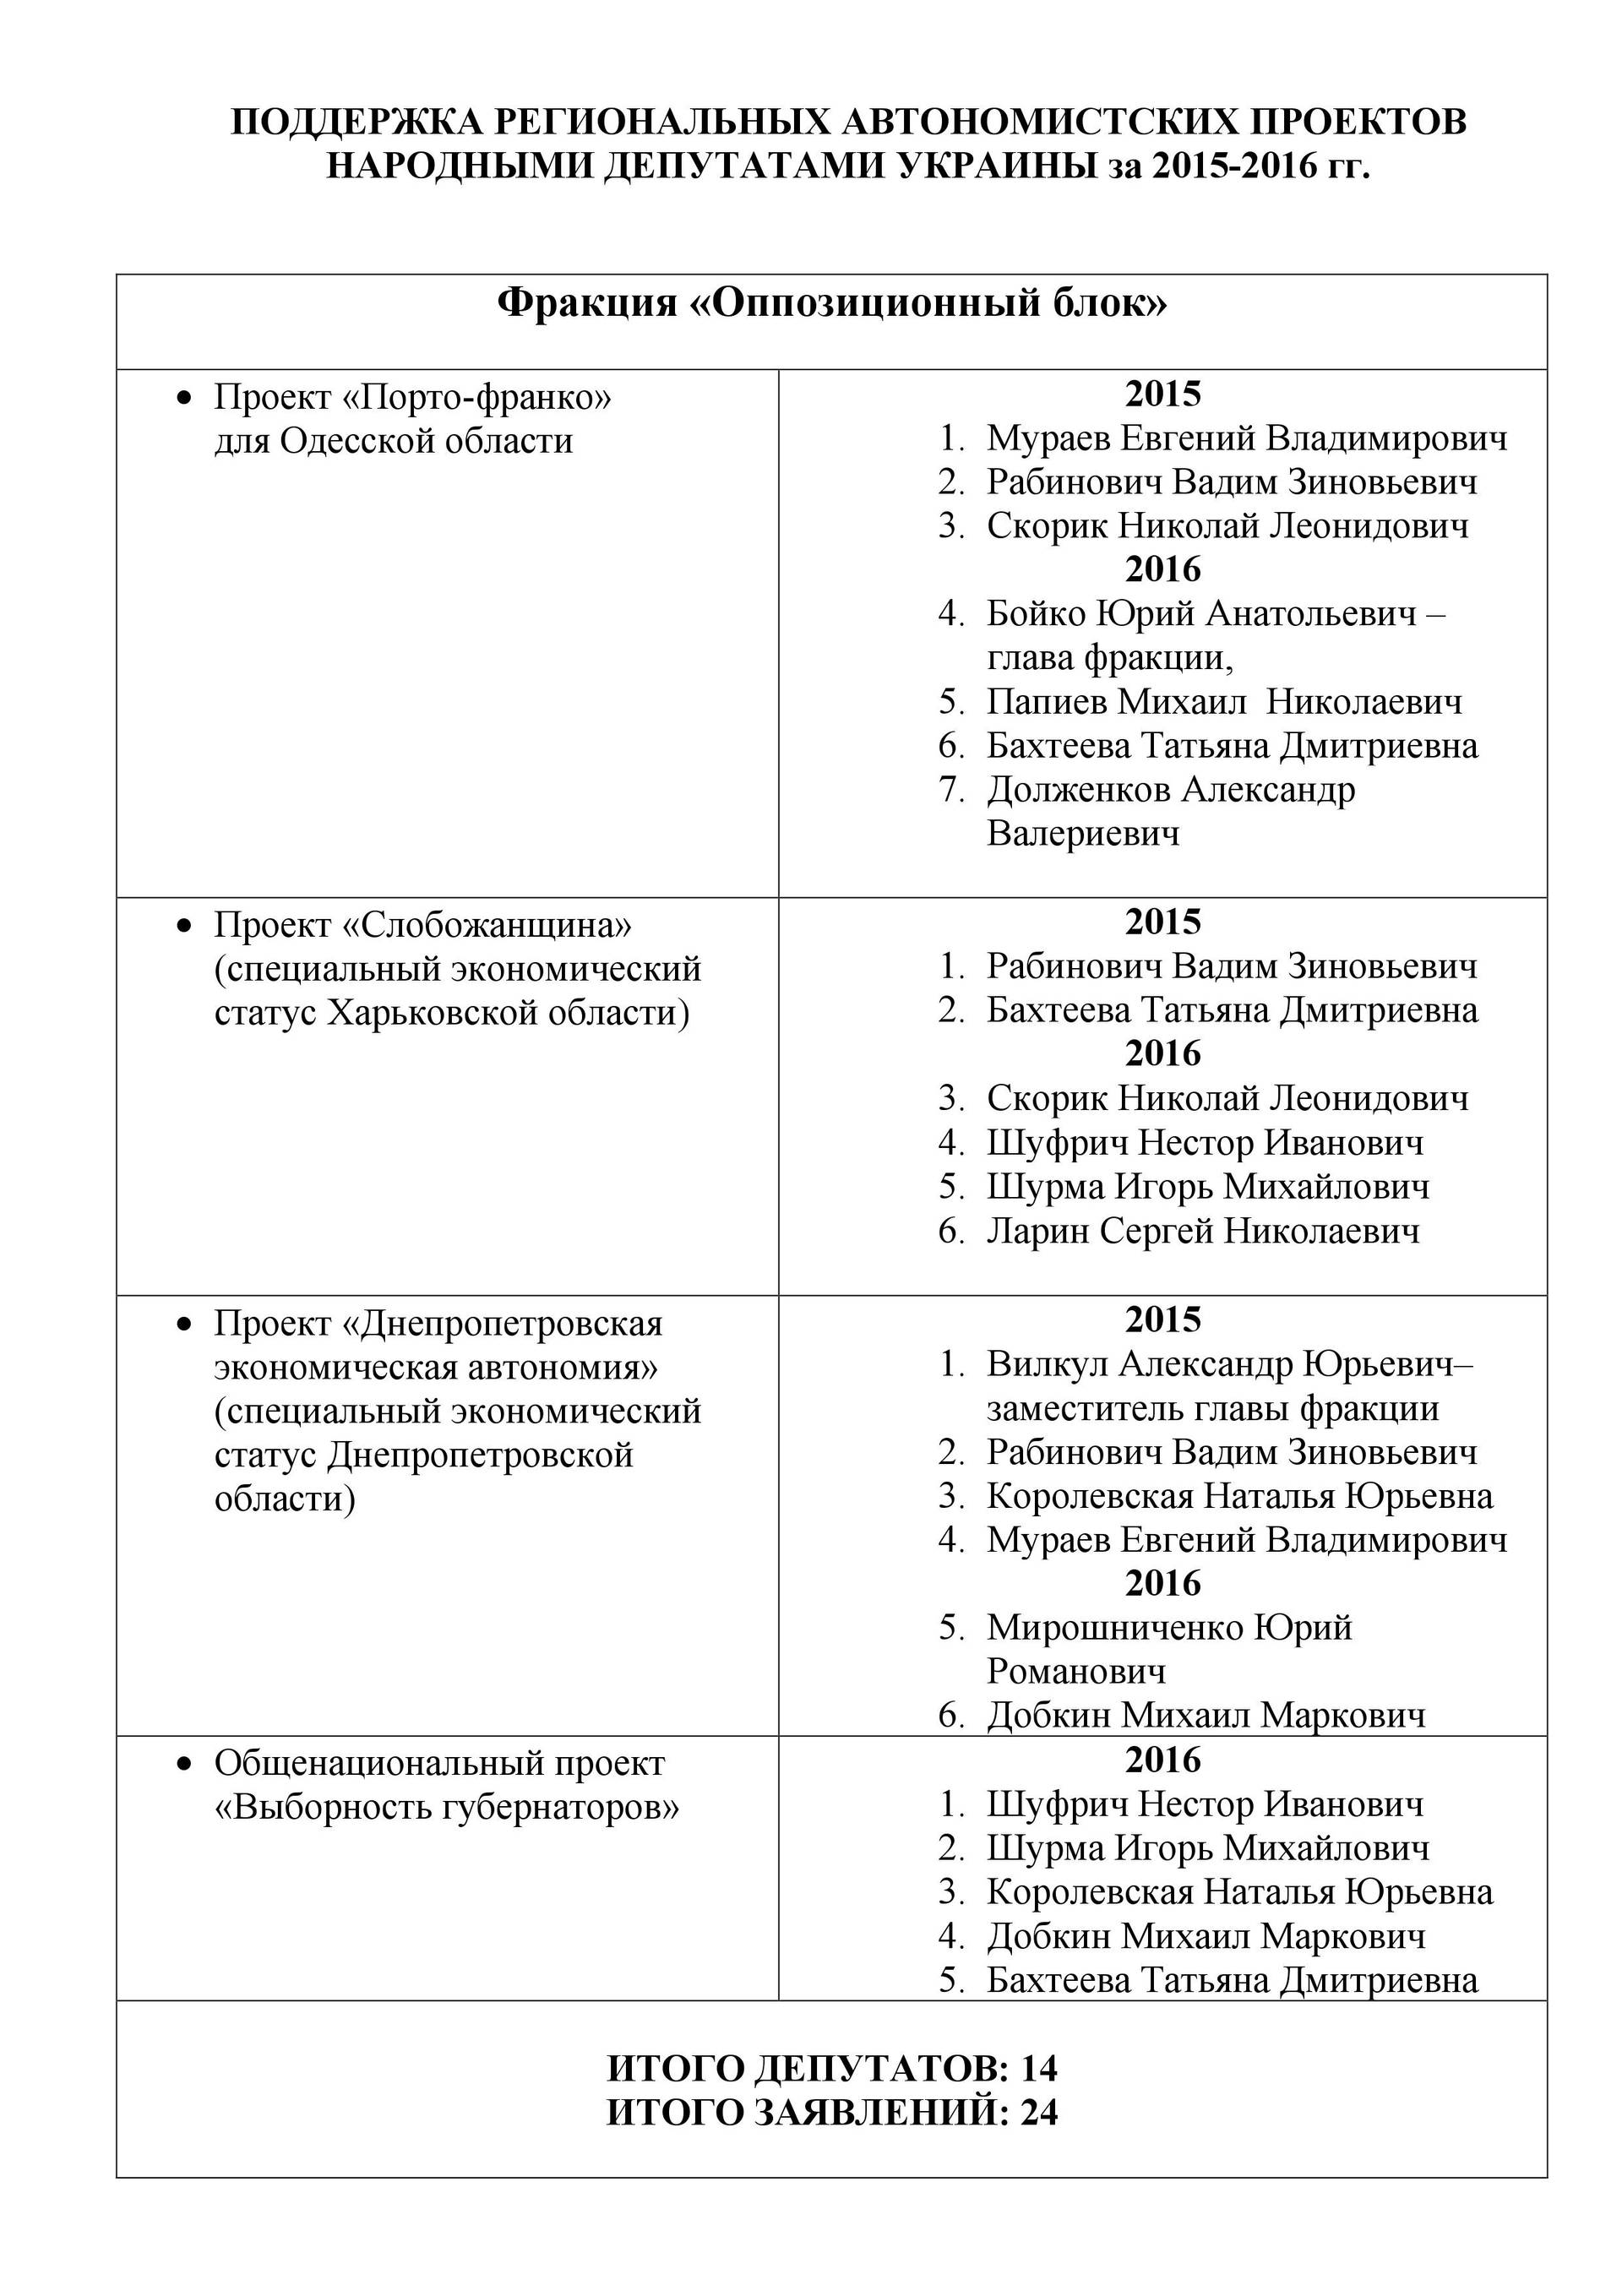 «Темний бік Кремля»: у листуванні з приймальні помічника Путіна вигулькнули прізвища нардепів з Буковини Михайла Папієва і Оксани Продан, як таких, які підтримують «автономістські» проекти  